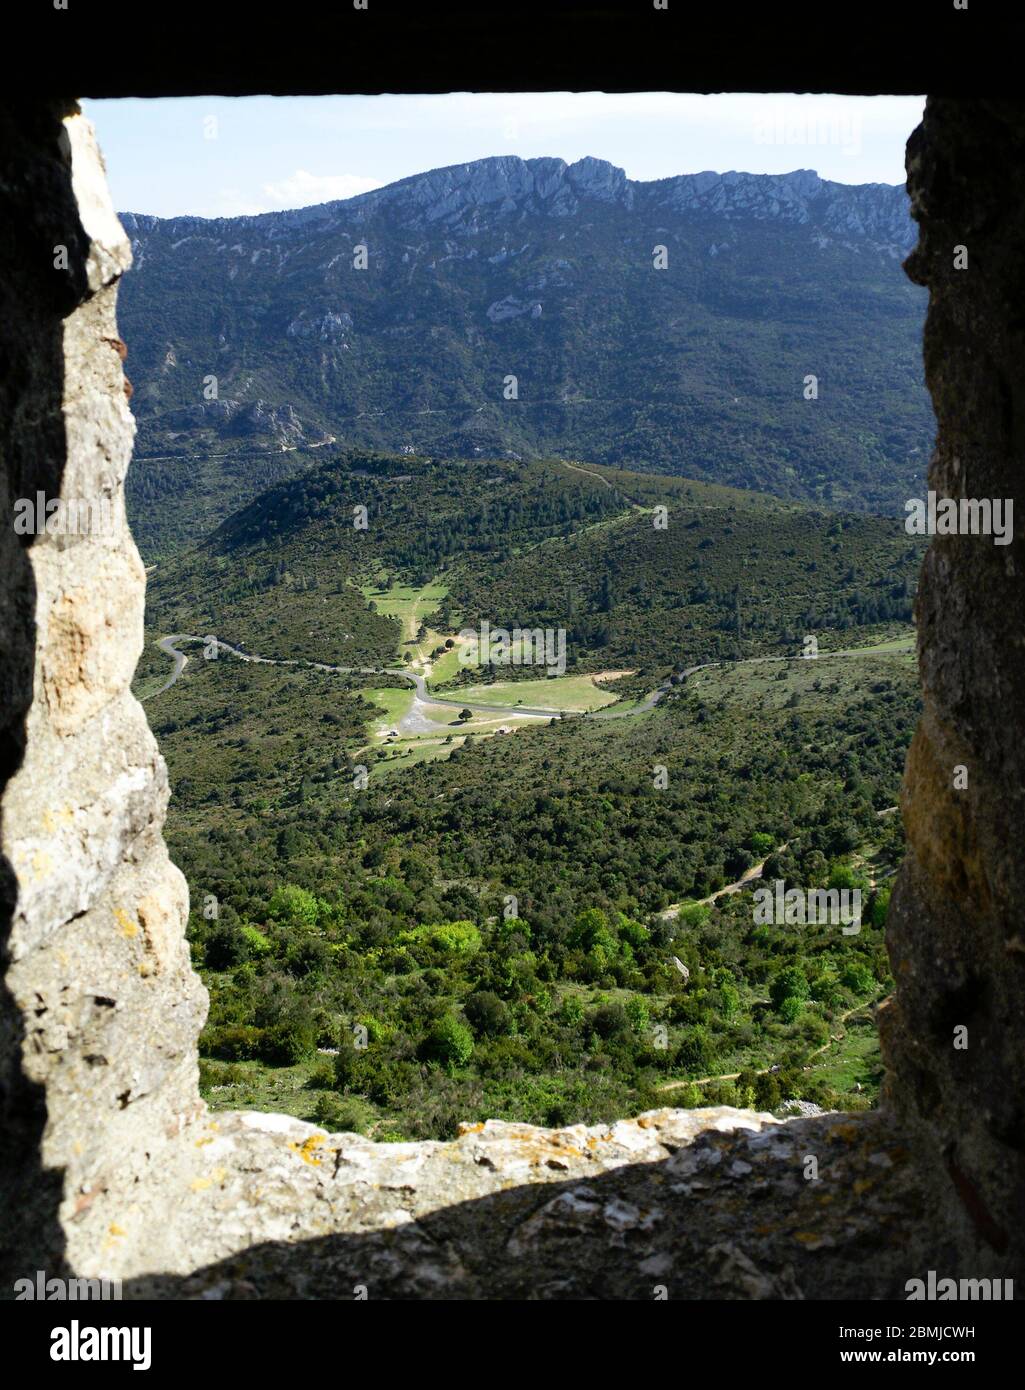 Vistas desde una ventana del Castillo de Peyrepertuse. Francia. Stock Photo